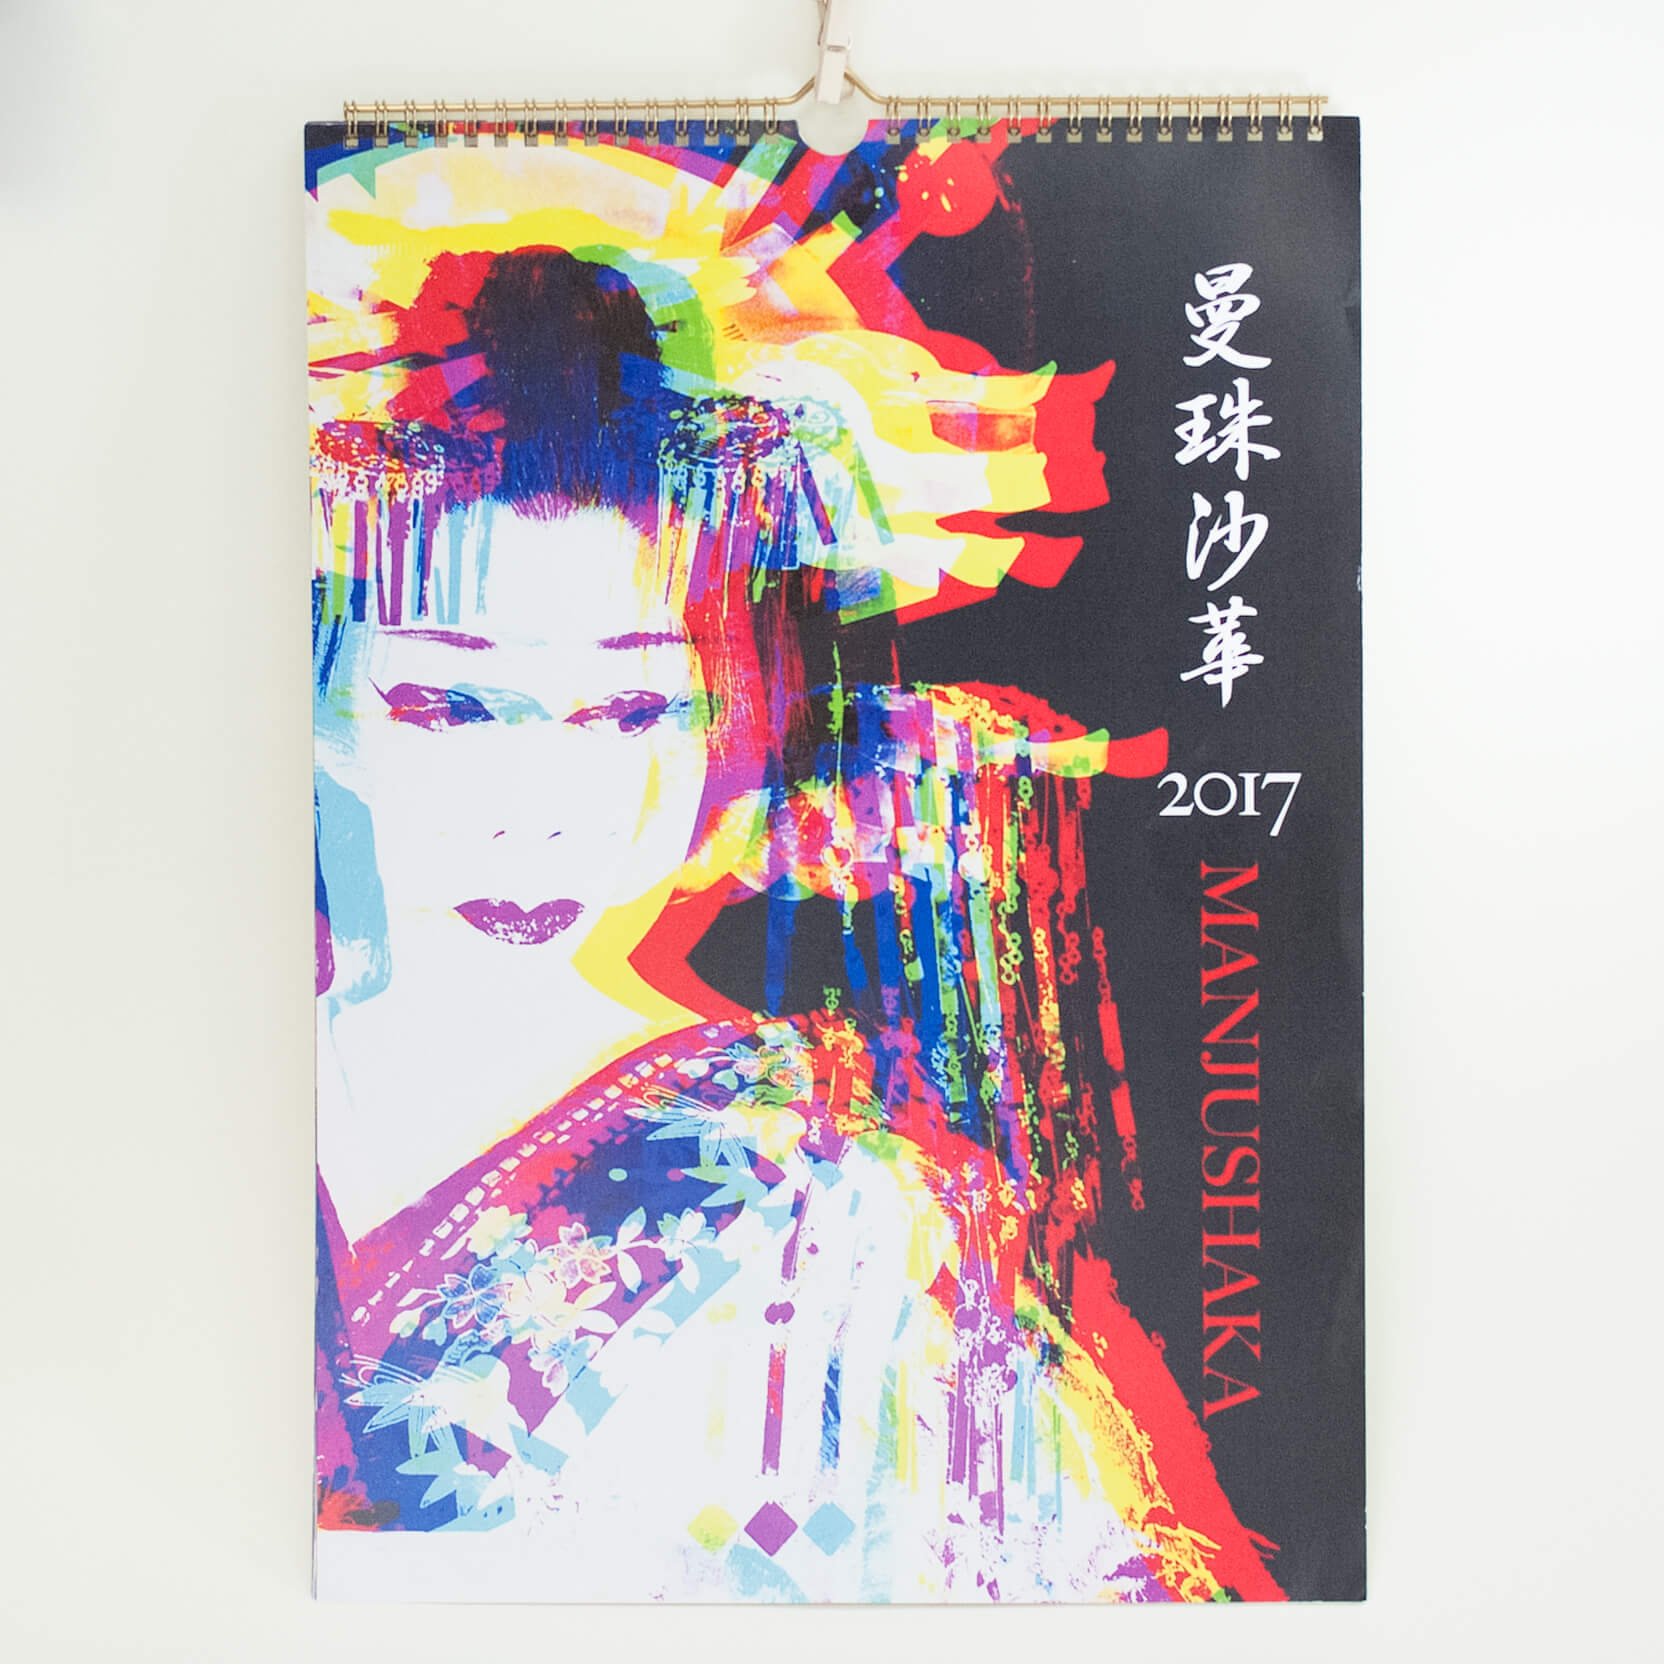 「藤中  絵未 様」製作のオリジナルカレンダー